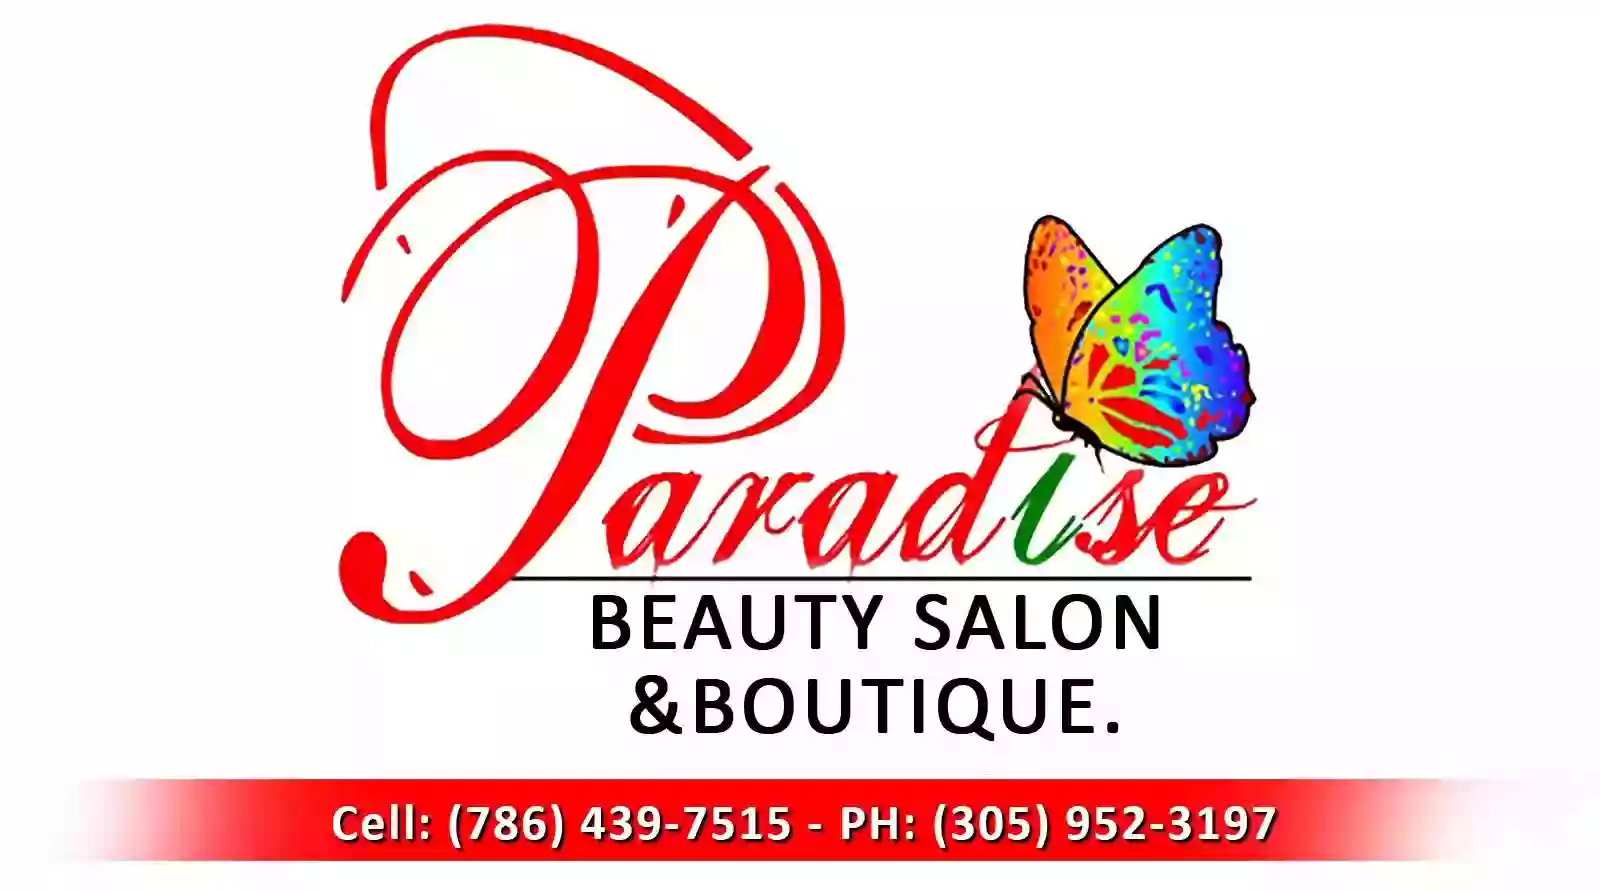 Paradise beauty salon and boutique